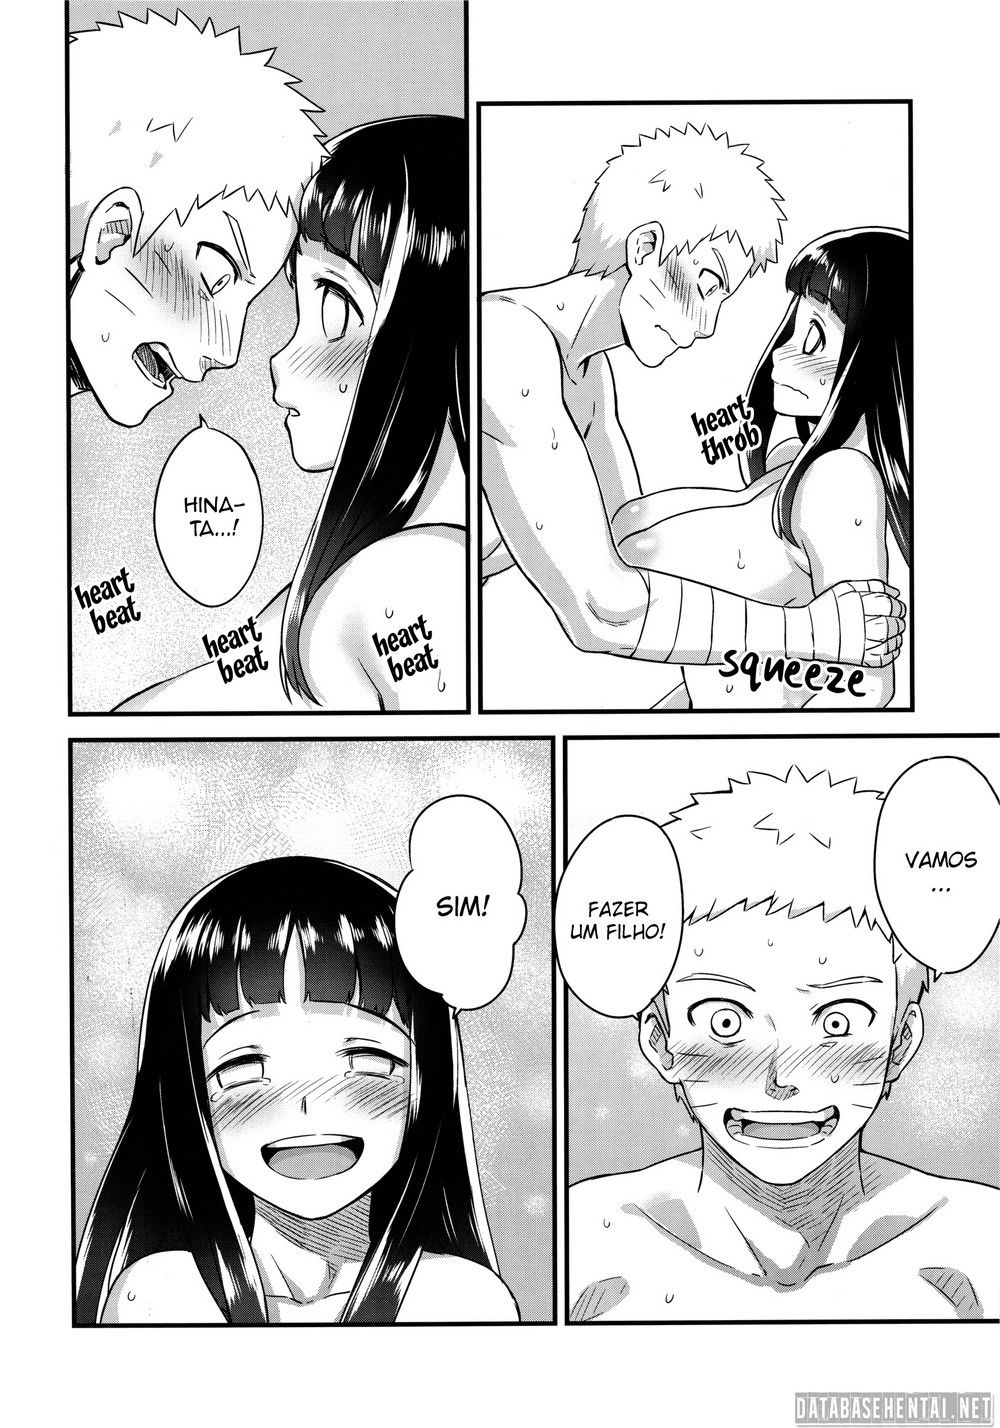 Naruto fazendo um filho com à Hinata